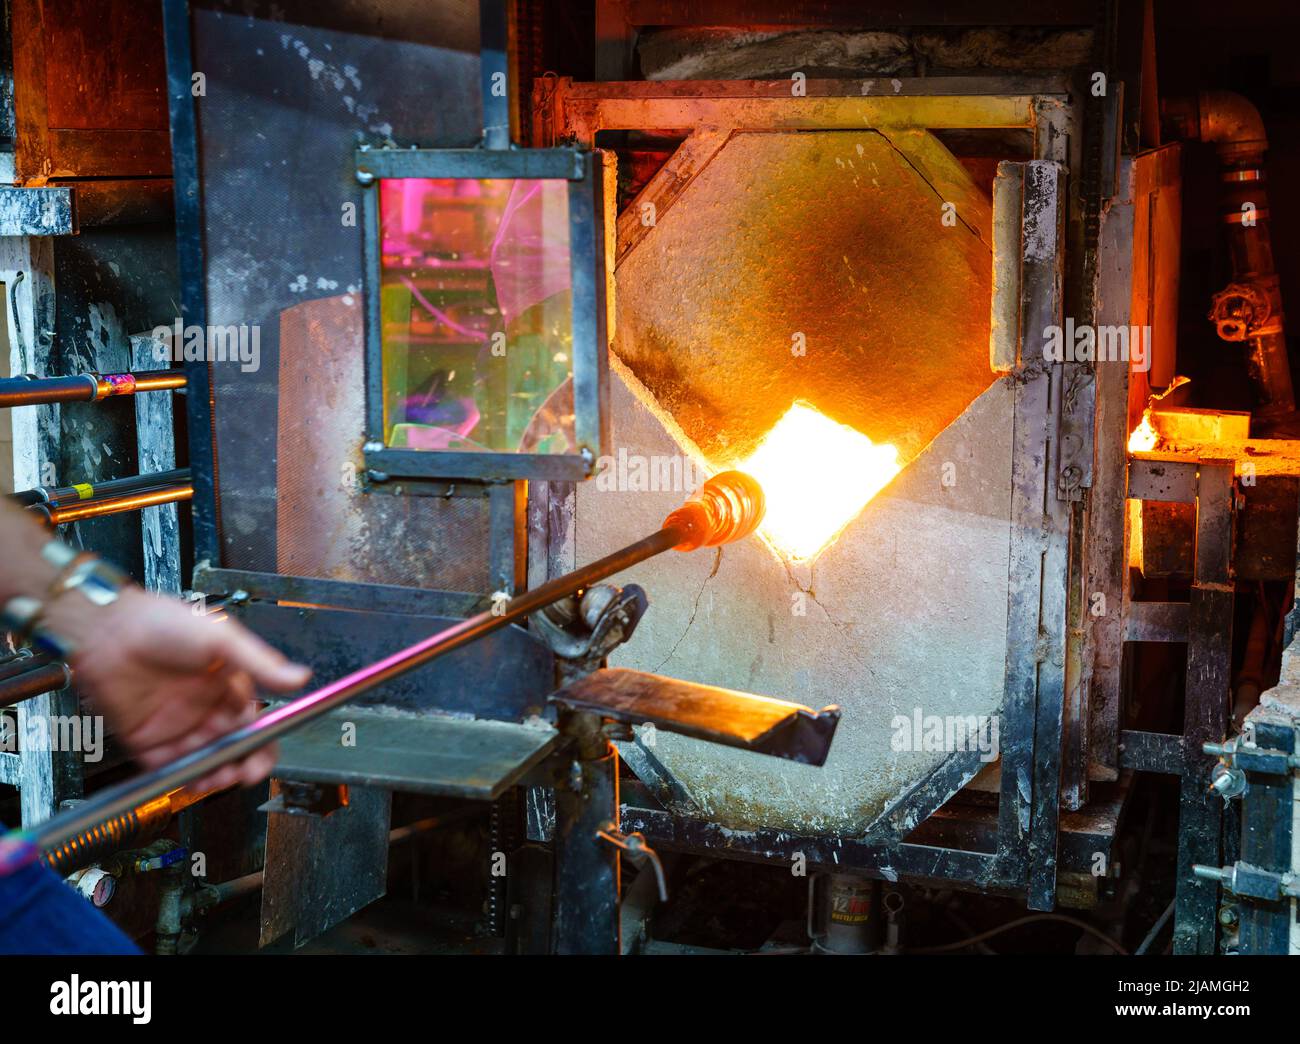 Ablandamiento del vidrio en un horno durante el proceso de soplado de vidrio Foto de stock